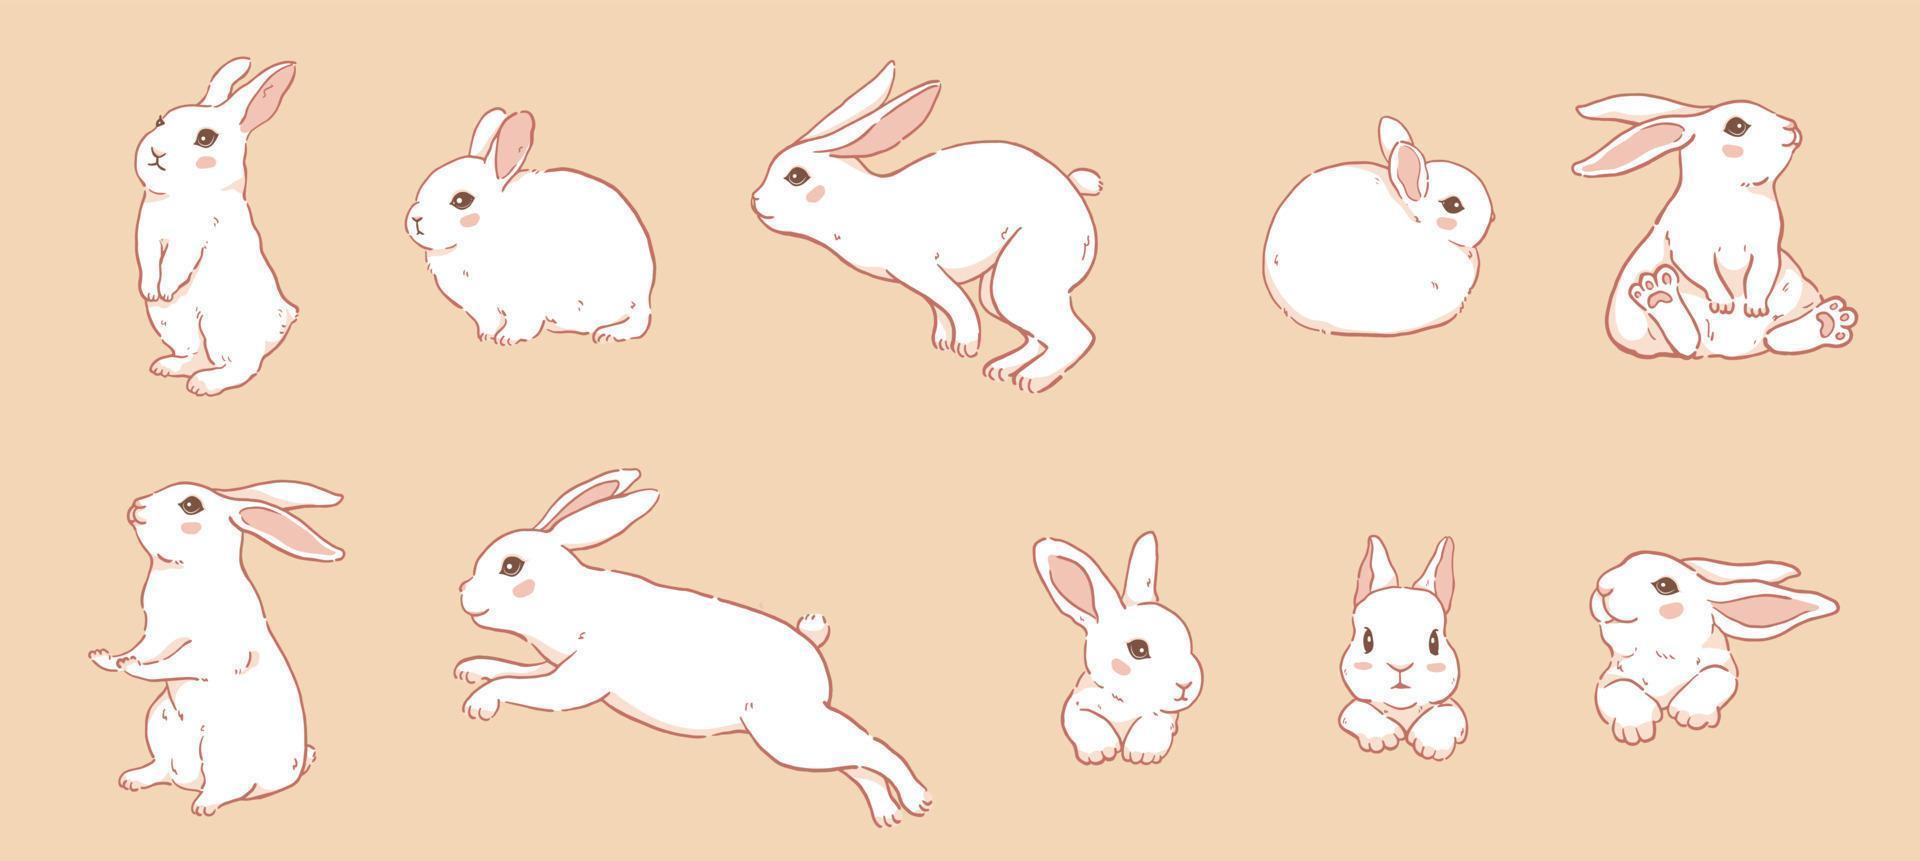 Cute cartoon white rabbit collection vector